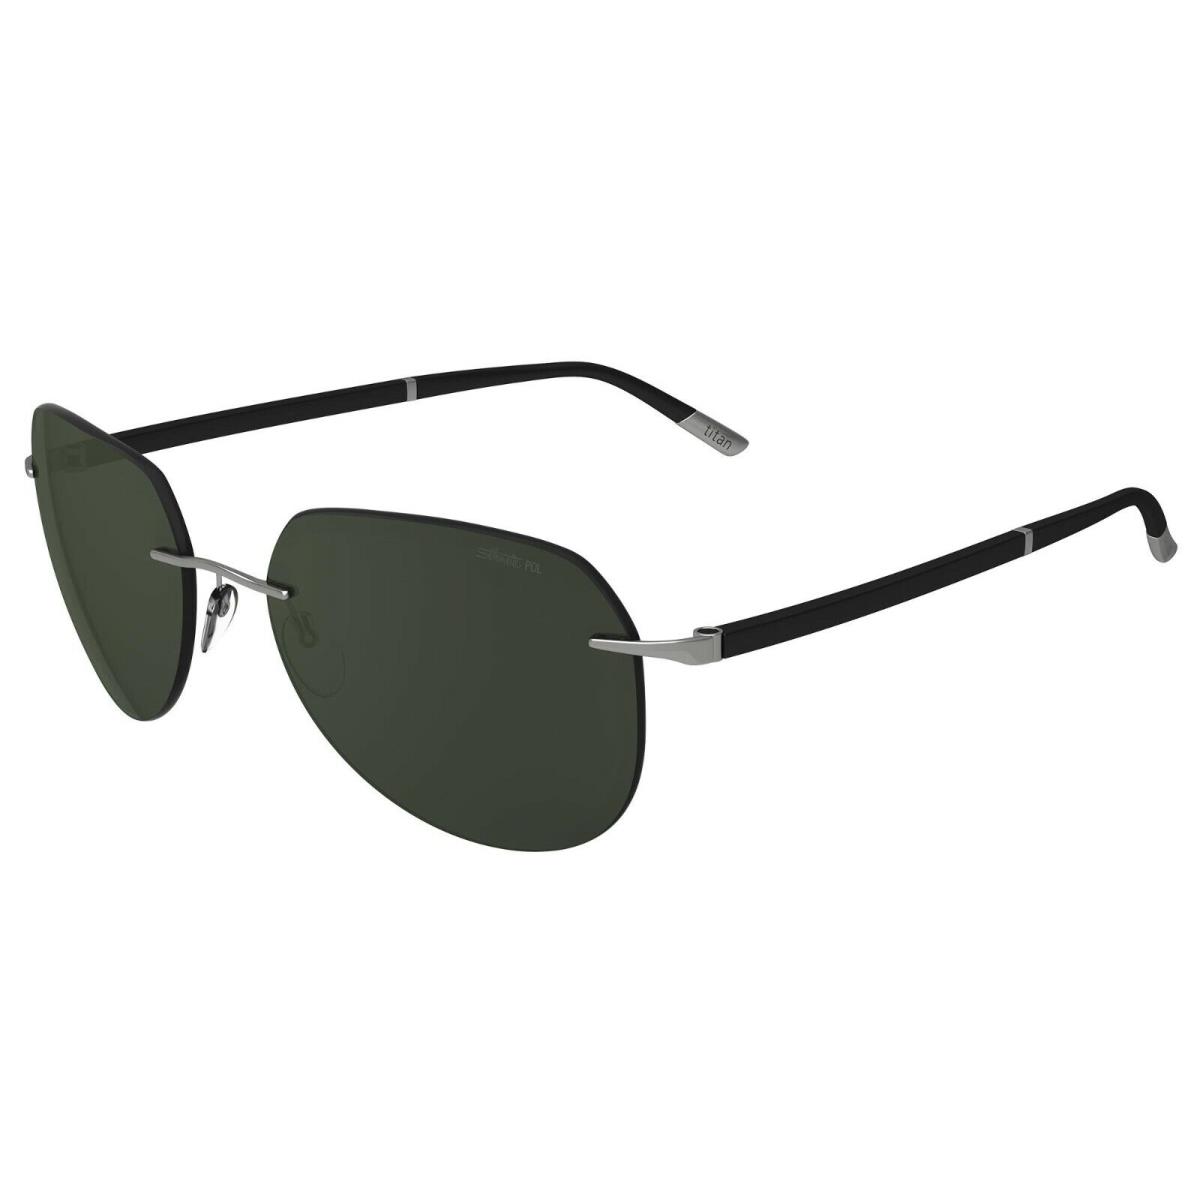 Silhouette Sun C-2 8709 Silver/green Polarized 6560 Sunglasses